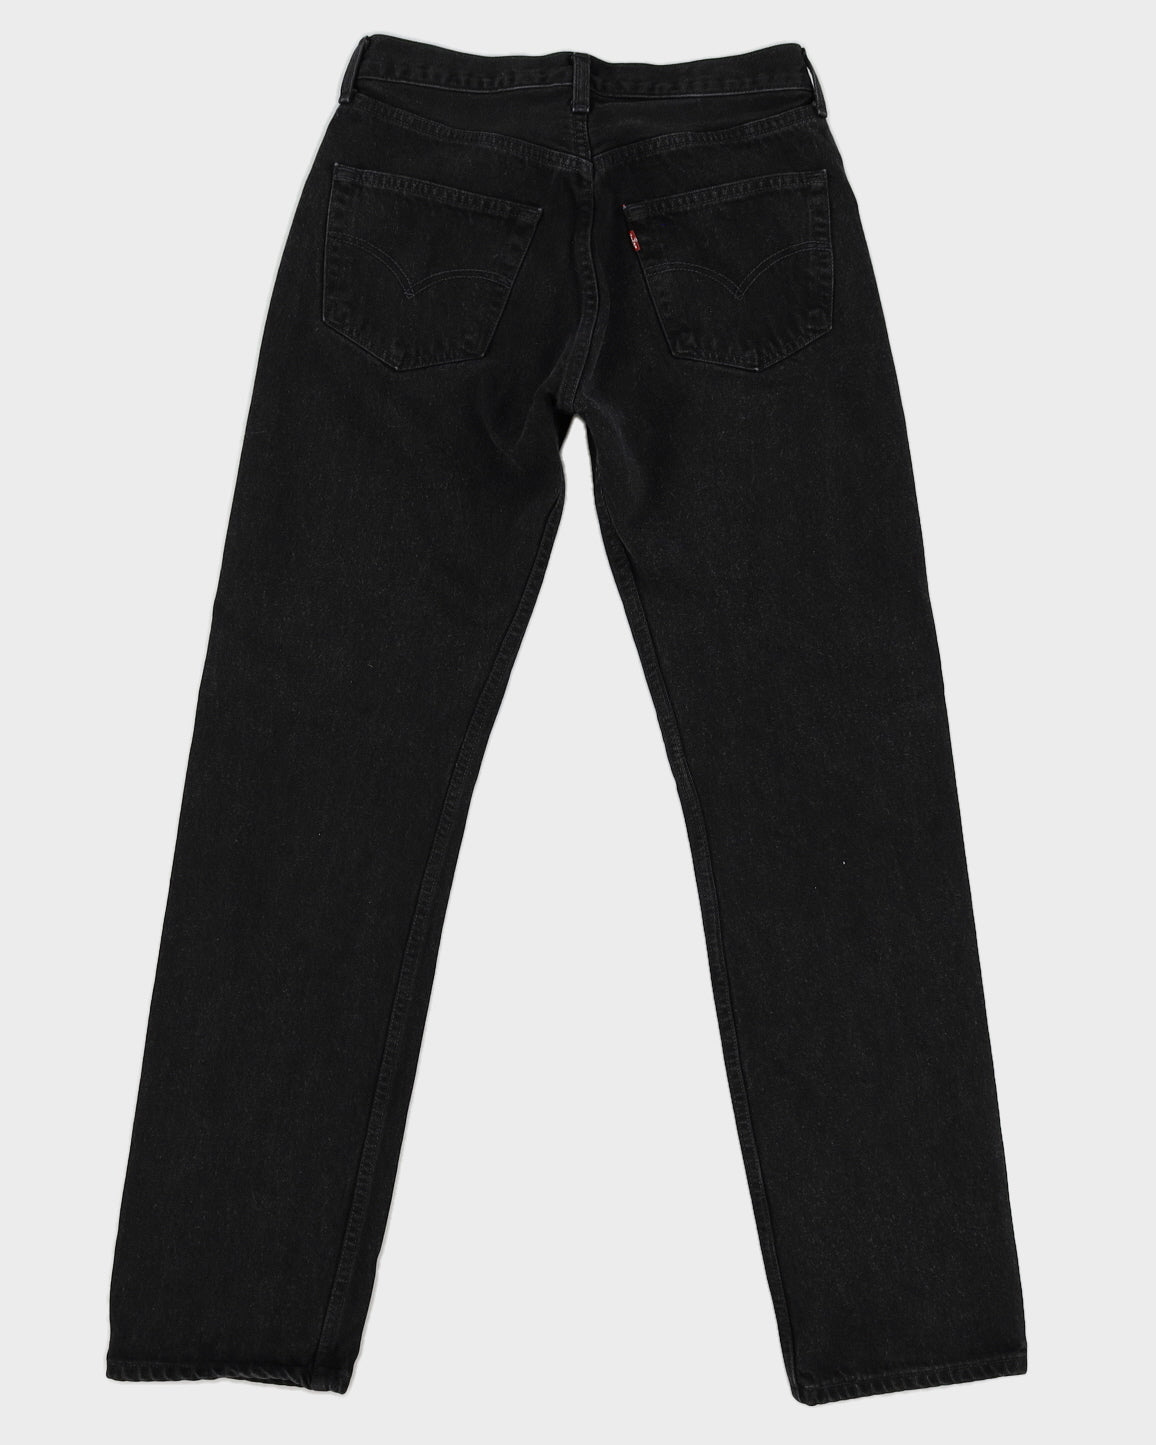 Vintage Black Levi's 501 Jeans - W28 L32